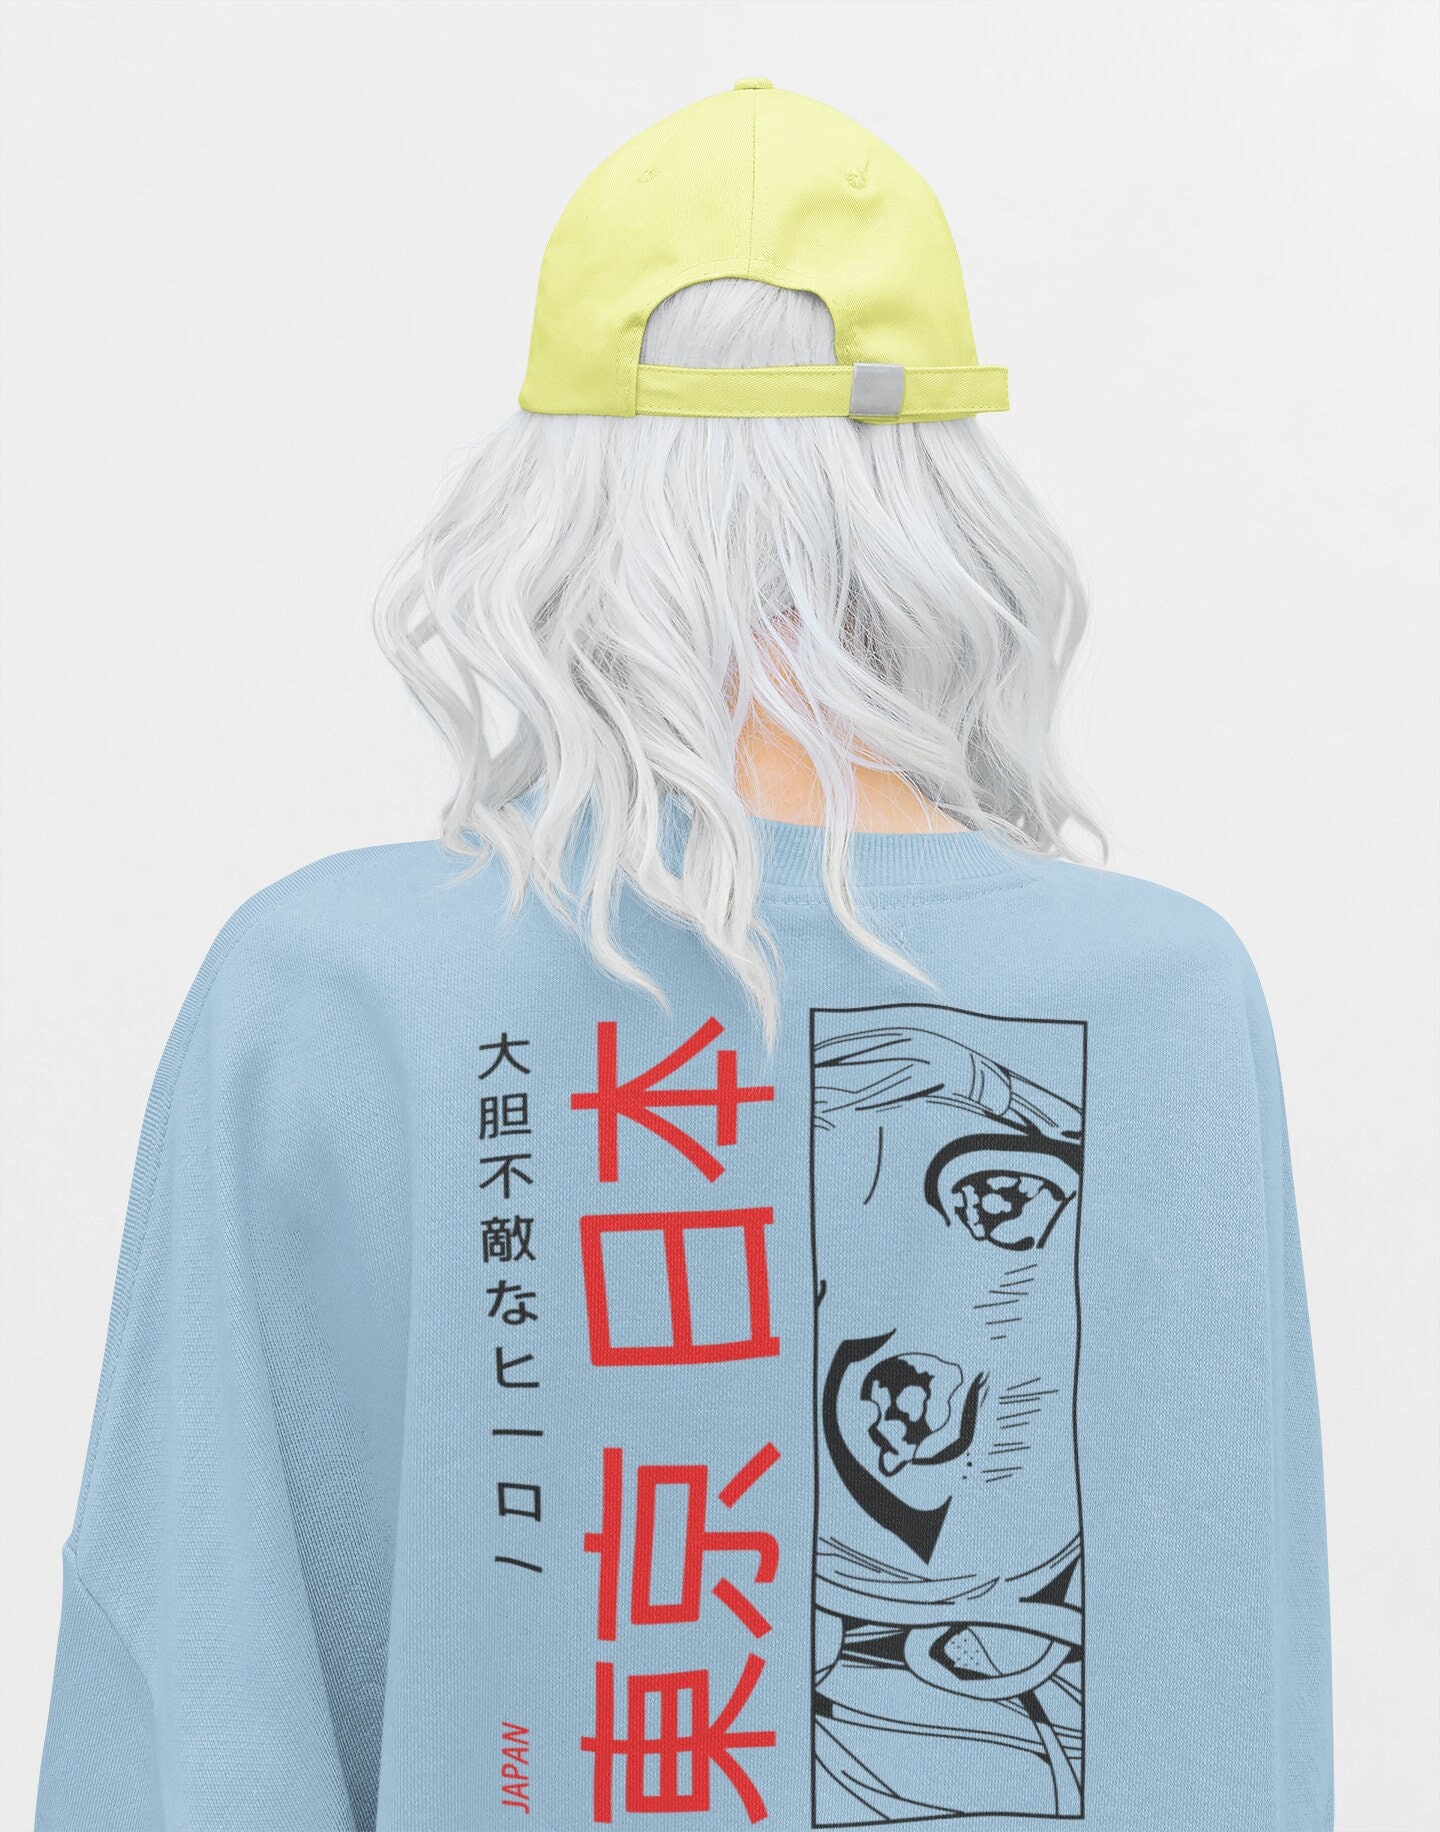 Manga Aesthetic Unisex Anime Sweatshirt Japanese Kanji 